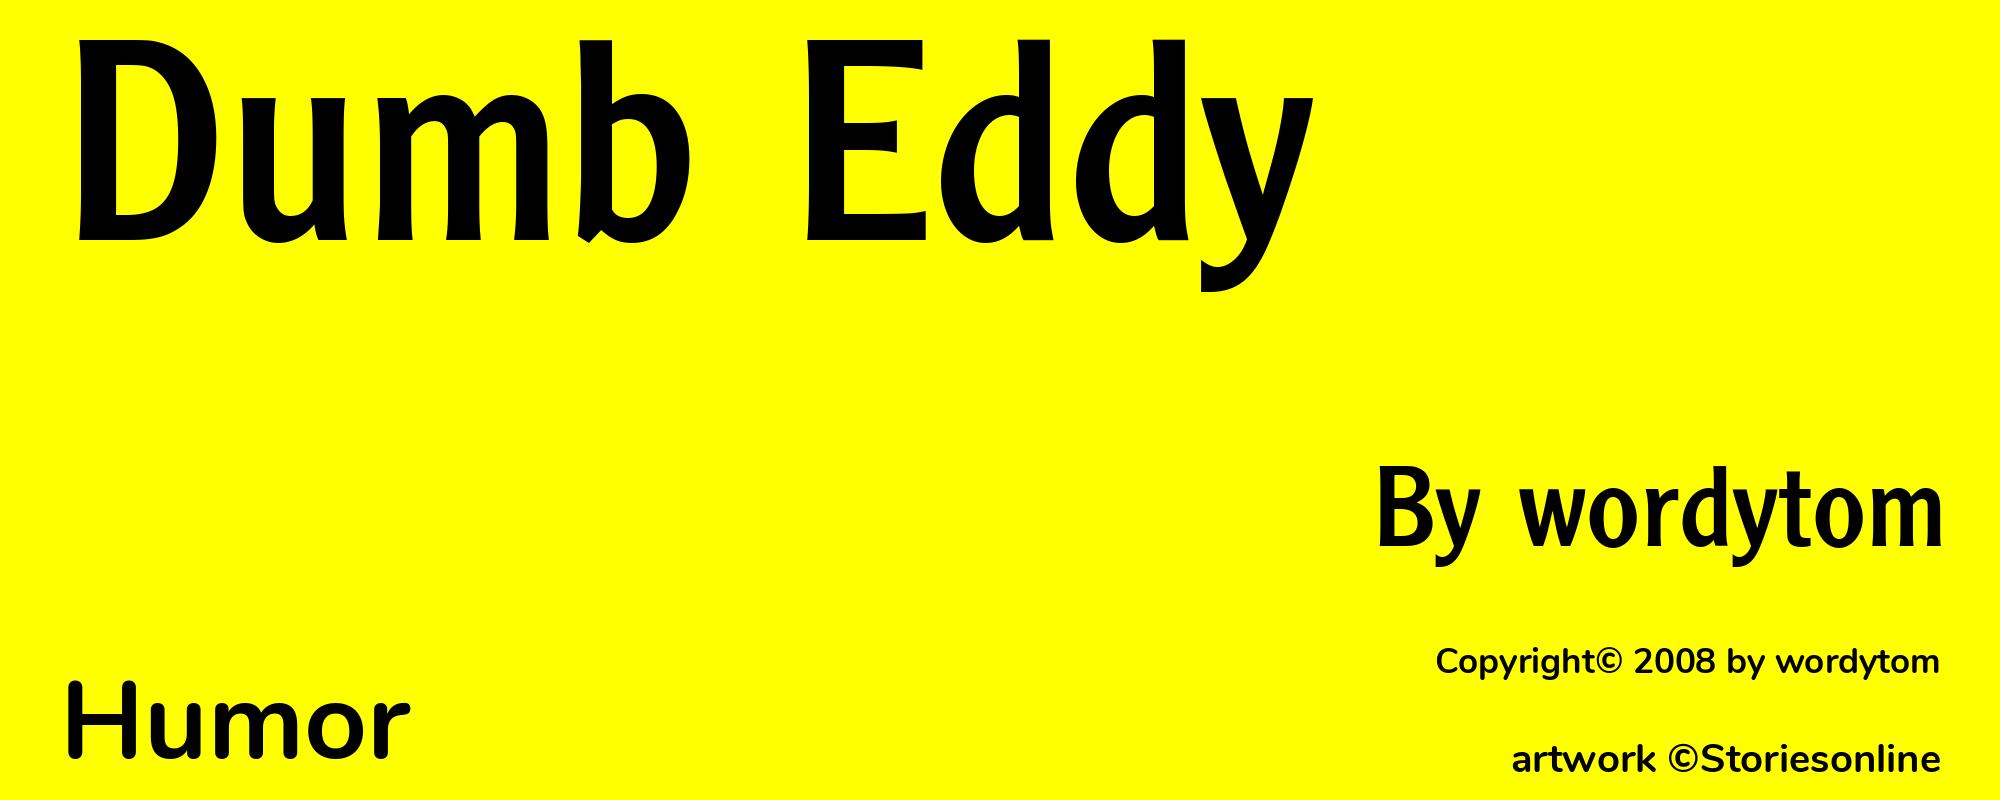 Dumb Eddy - Cover